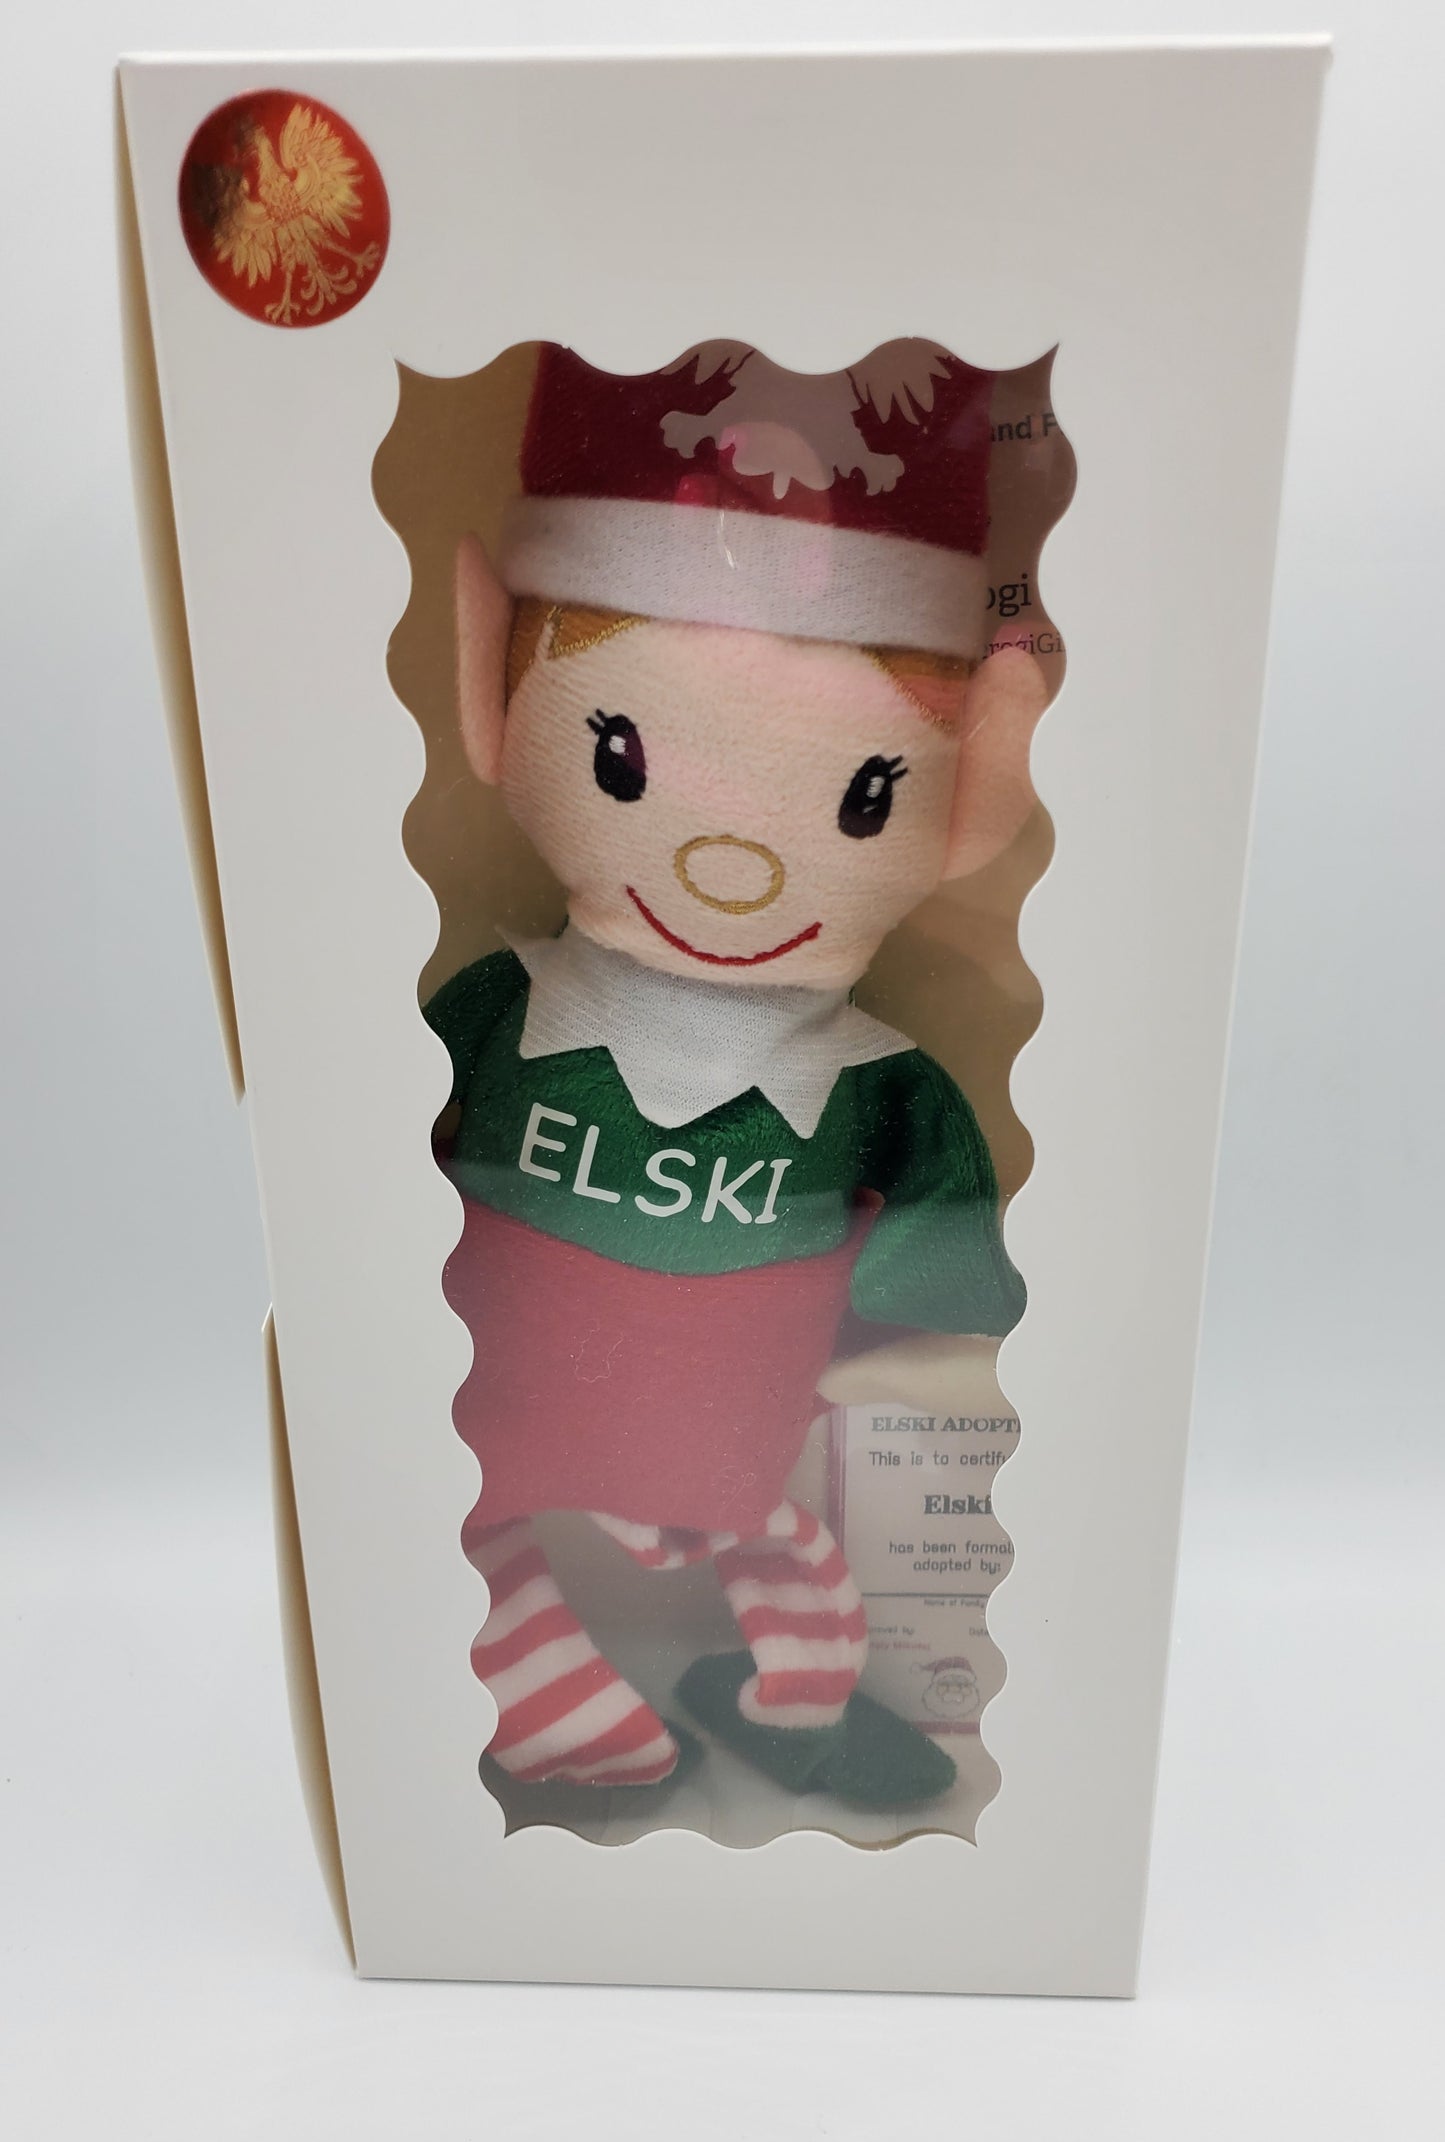 Elski in box